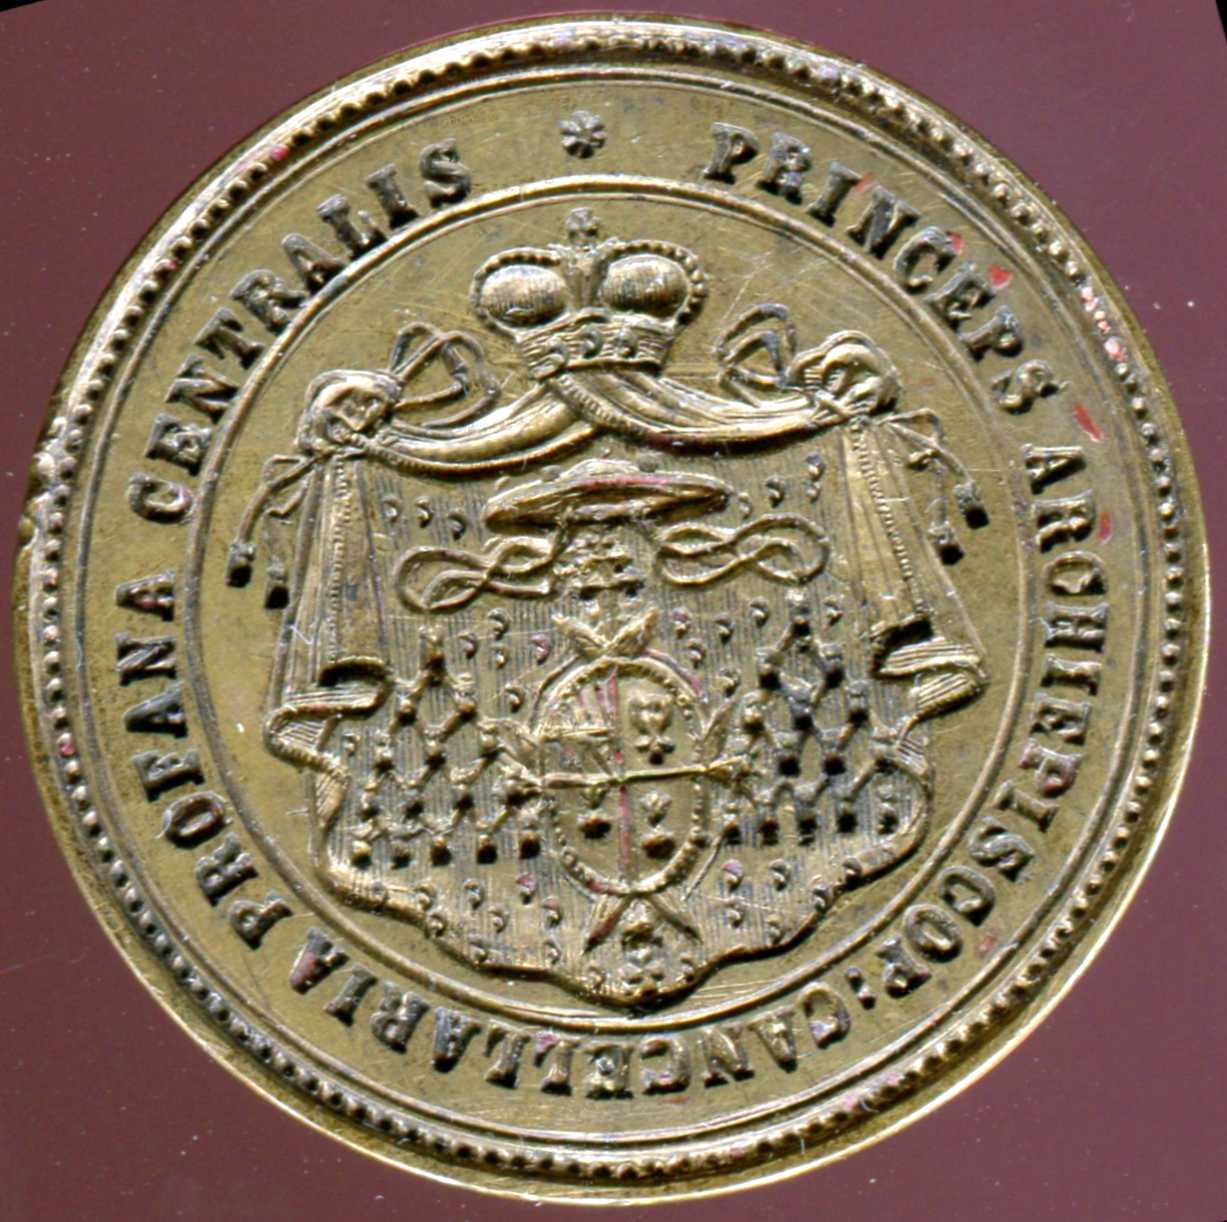 Pečetidlo Ústředního ředitelství arcibiskupských statků Kroměříž, 1916–1920, znak arcibiskupa Lva Skrbenského (ZAO, ÚŘAS, ič. 58144)